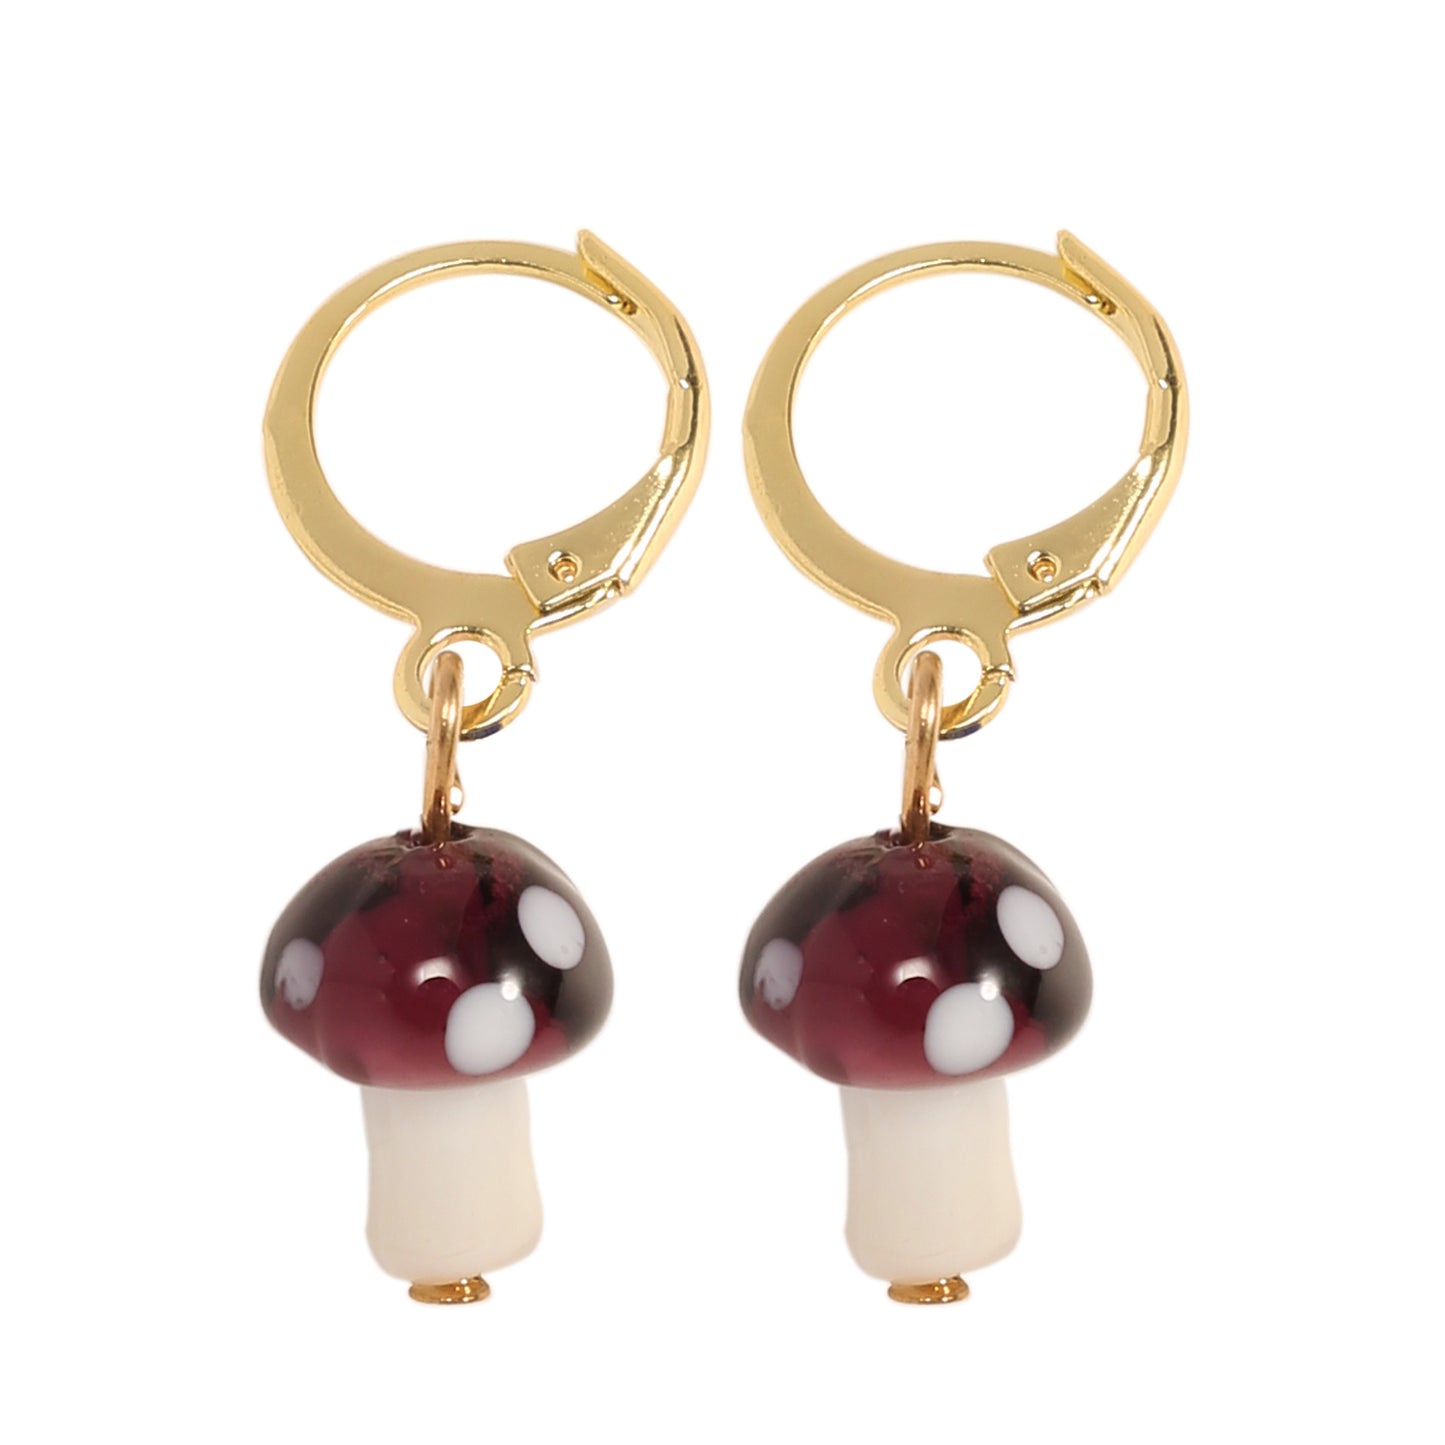 Fashion Cute Polka Dot Mushroom Earrings Simple Earrings Women